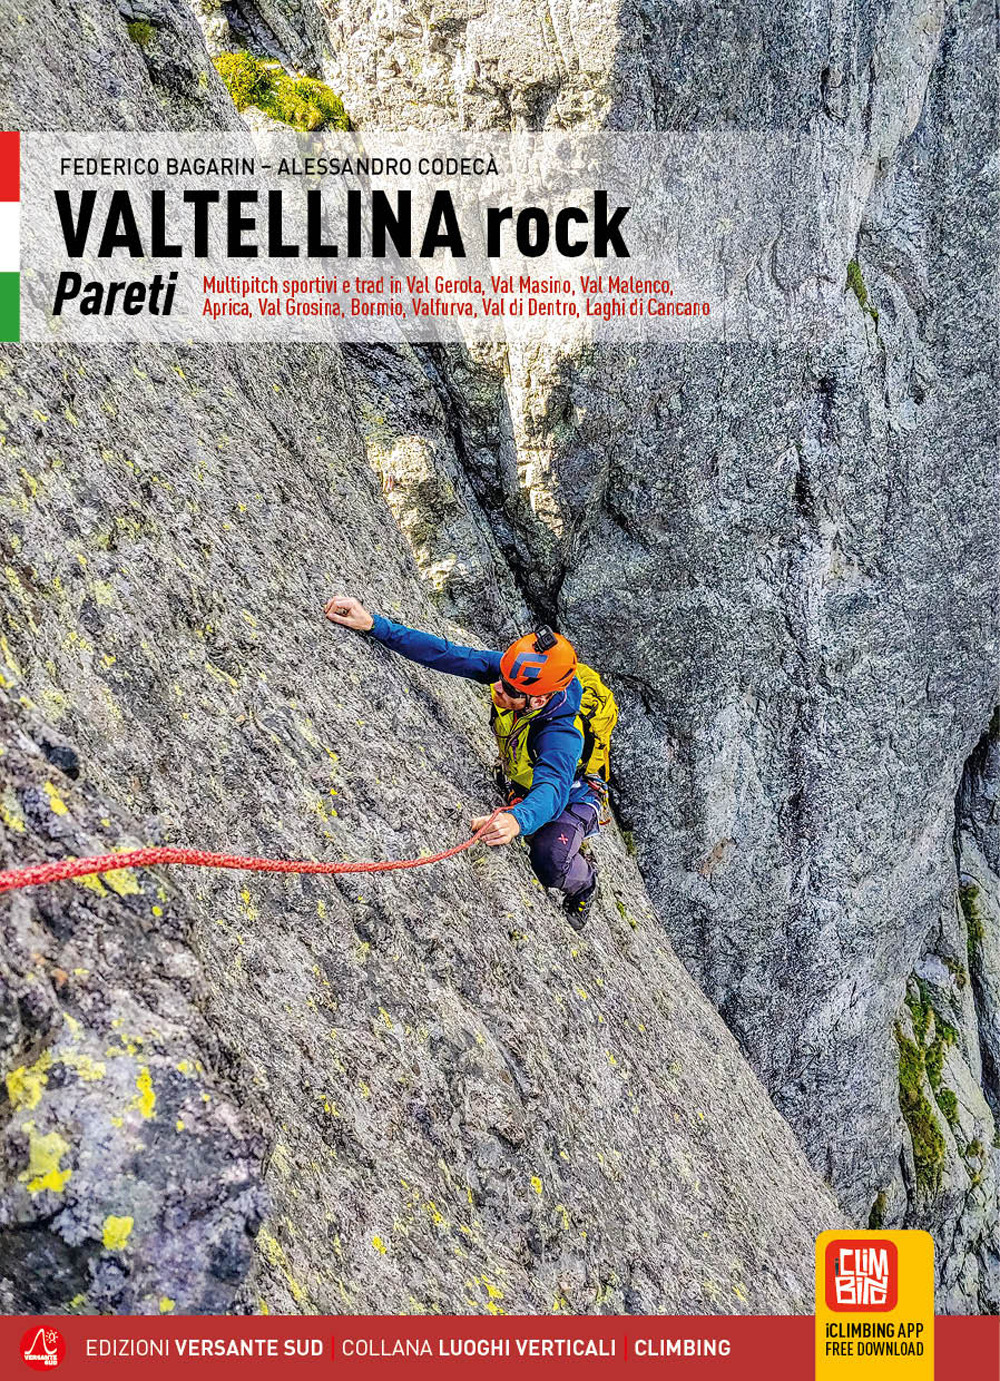 Valtellina rock. Pareti. Multipitch sportive e trad in Val Gerola, Val Masino, Val Malenco, Aprica, Val Grosina, Bormio, Valfurva, Val di Dentro, Laghi di Cancano